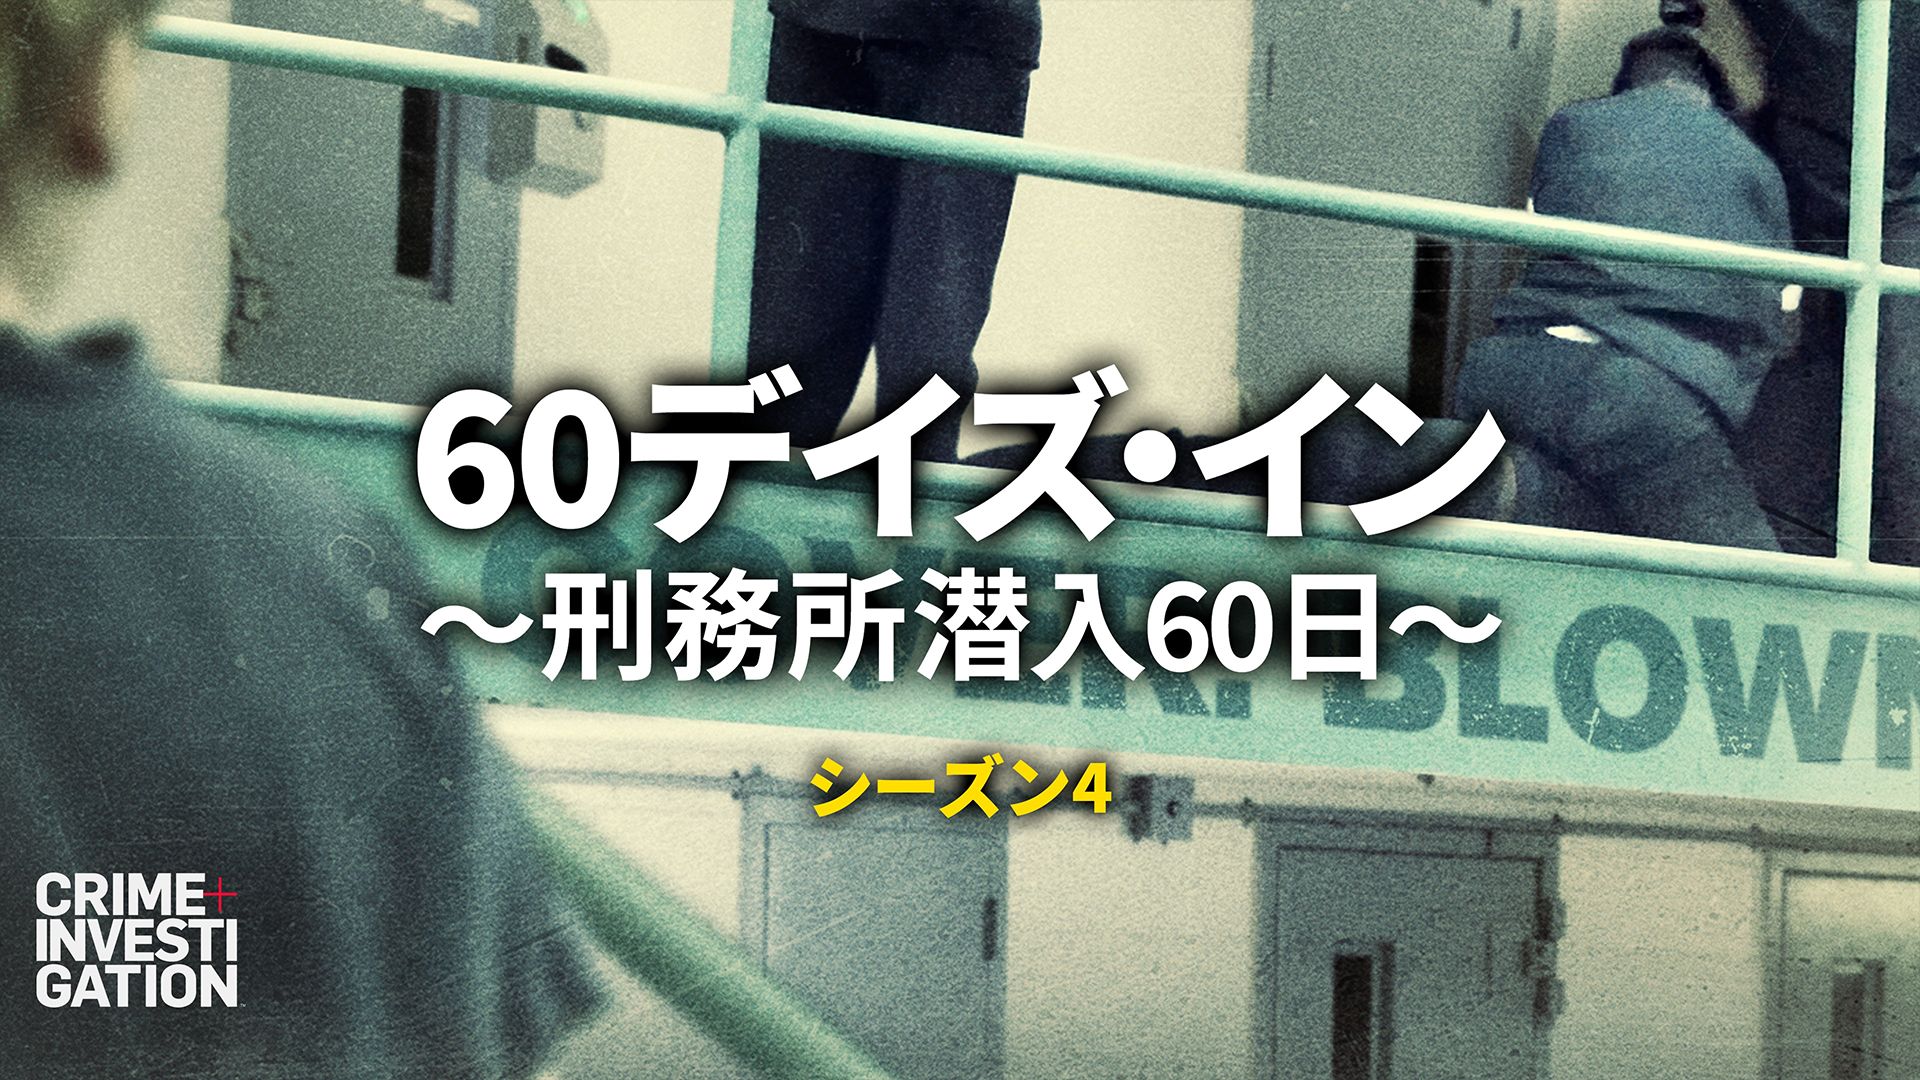 60デイズ･イン 〜刑務所潜入60日〜 シーズン4